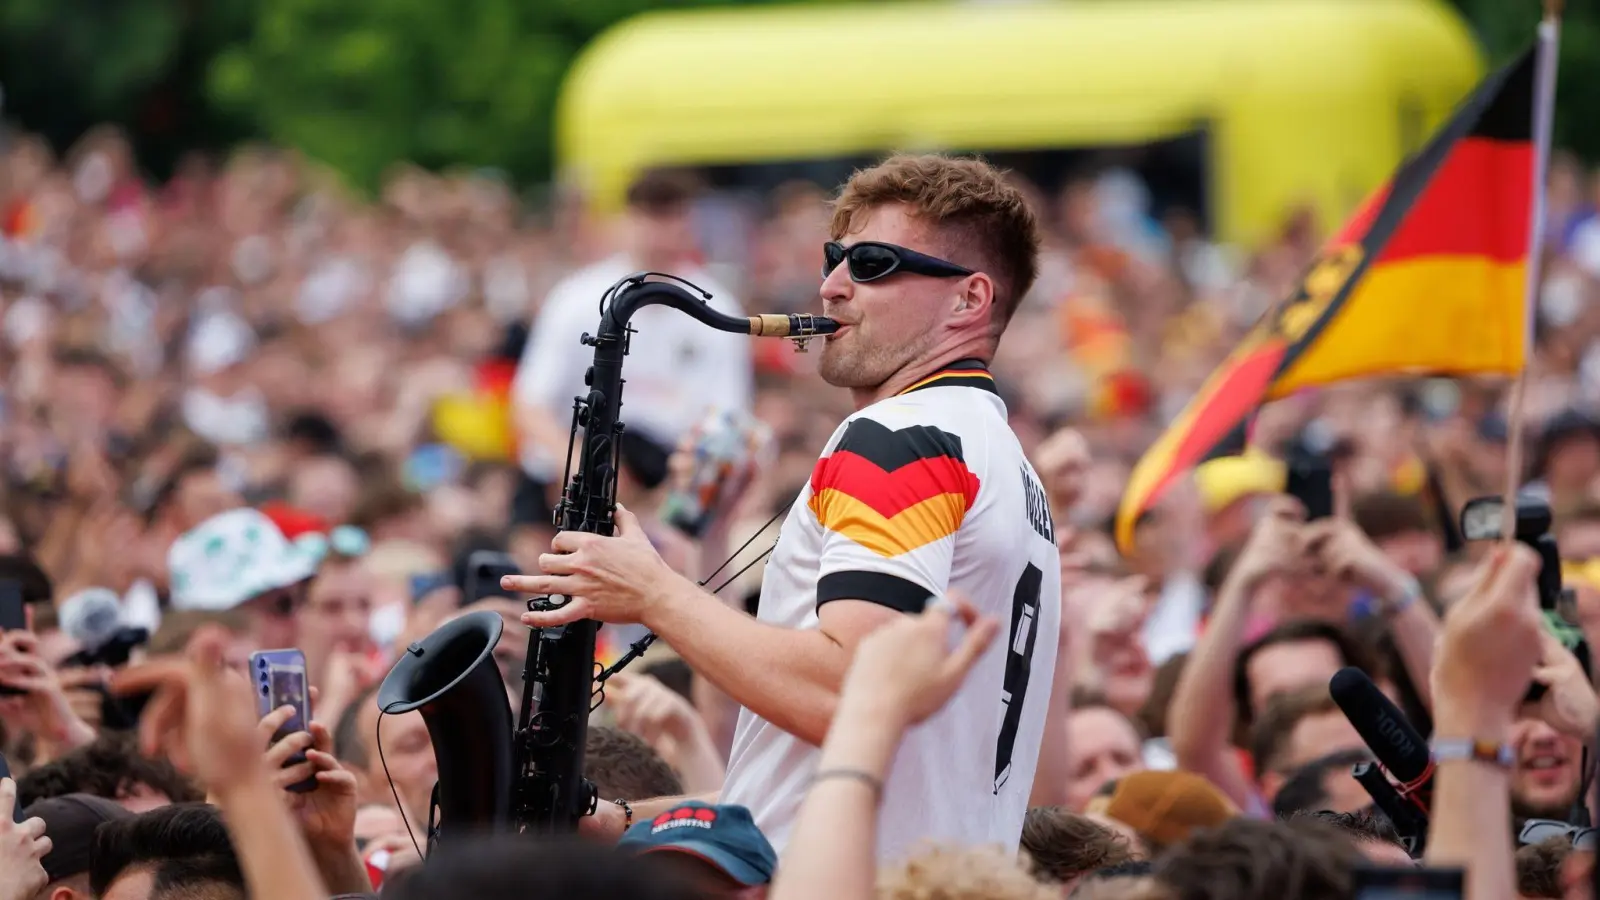 Andre Schnura spielte auch beim Fanfest in Dortmund Saxofon. (Bild: Friso Gentsch/dpa)